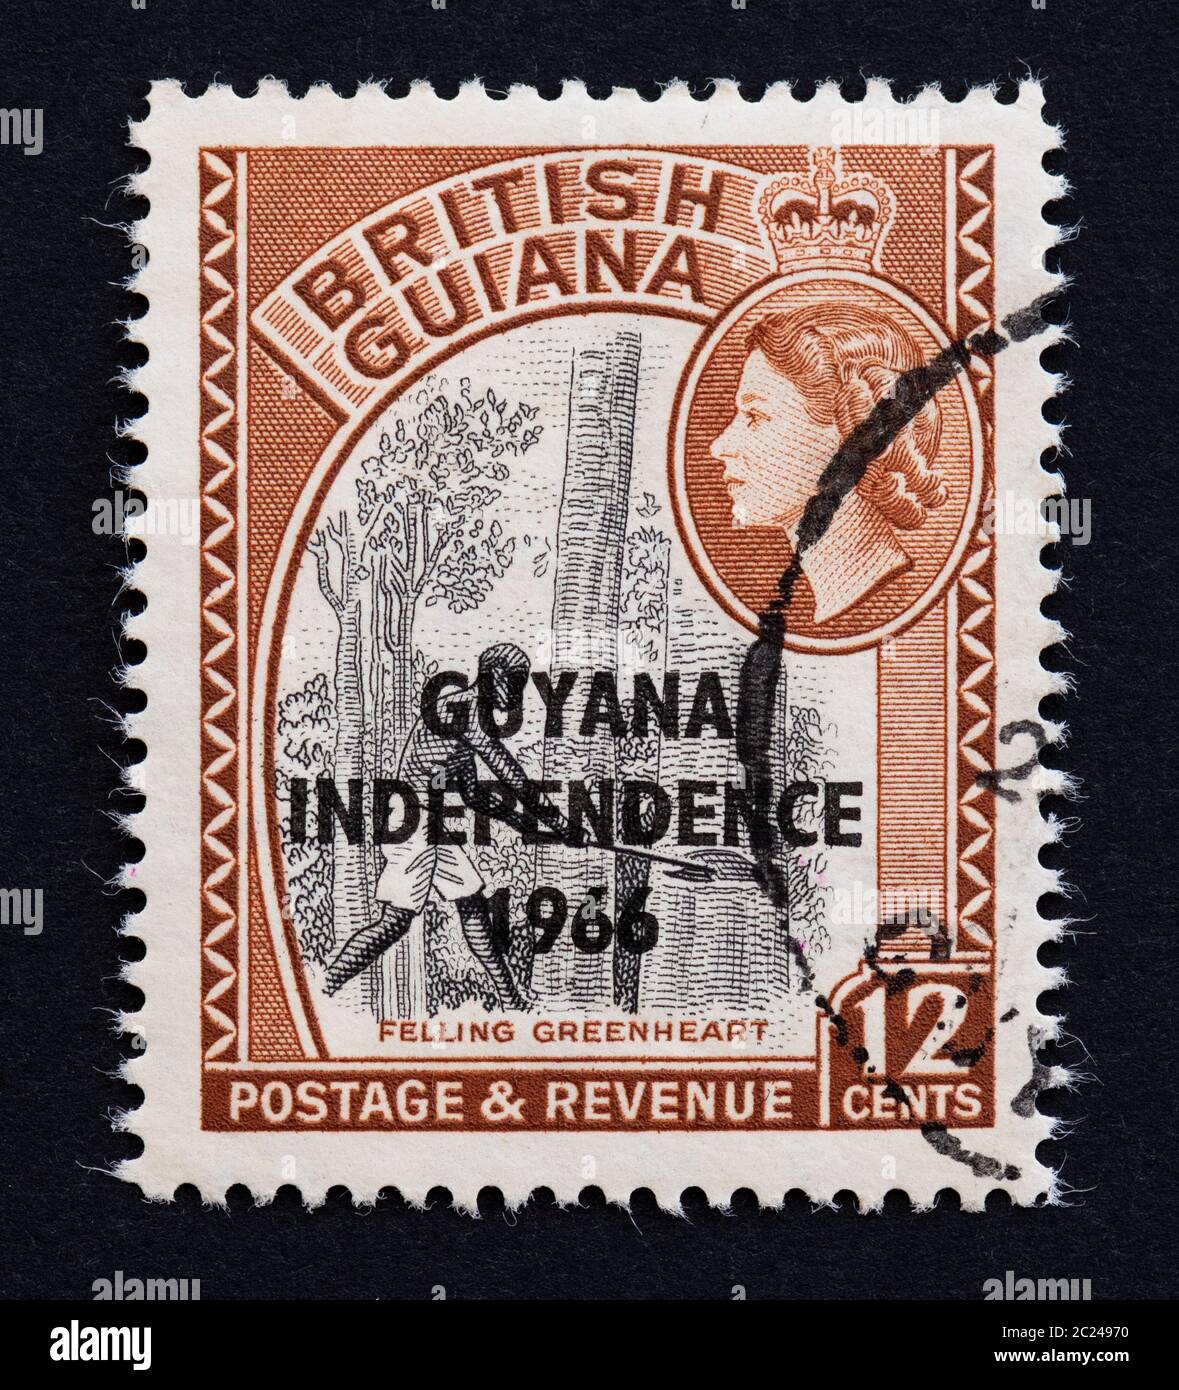 Timbre de la Guyane britannique surimprimé avec Guyana Independence 1966 - indique l'abattage de la plante greenheart ou chlorocardium rodei Banque D'Images